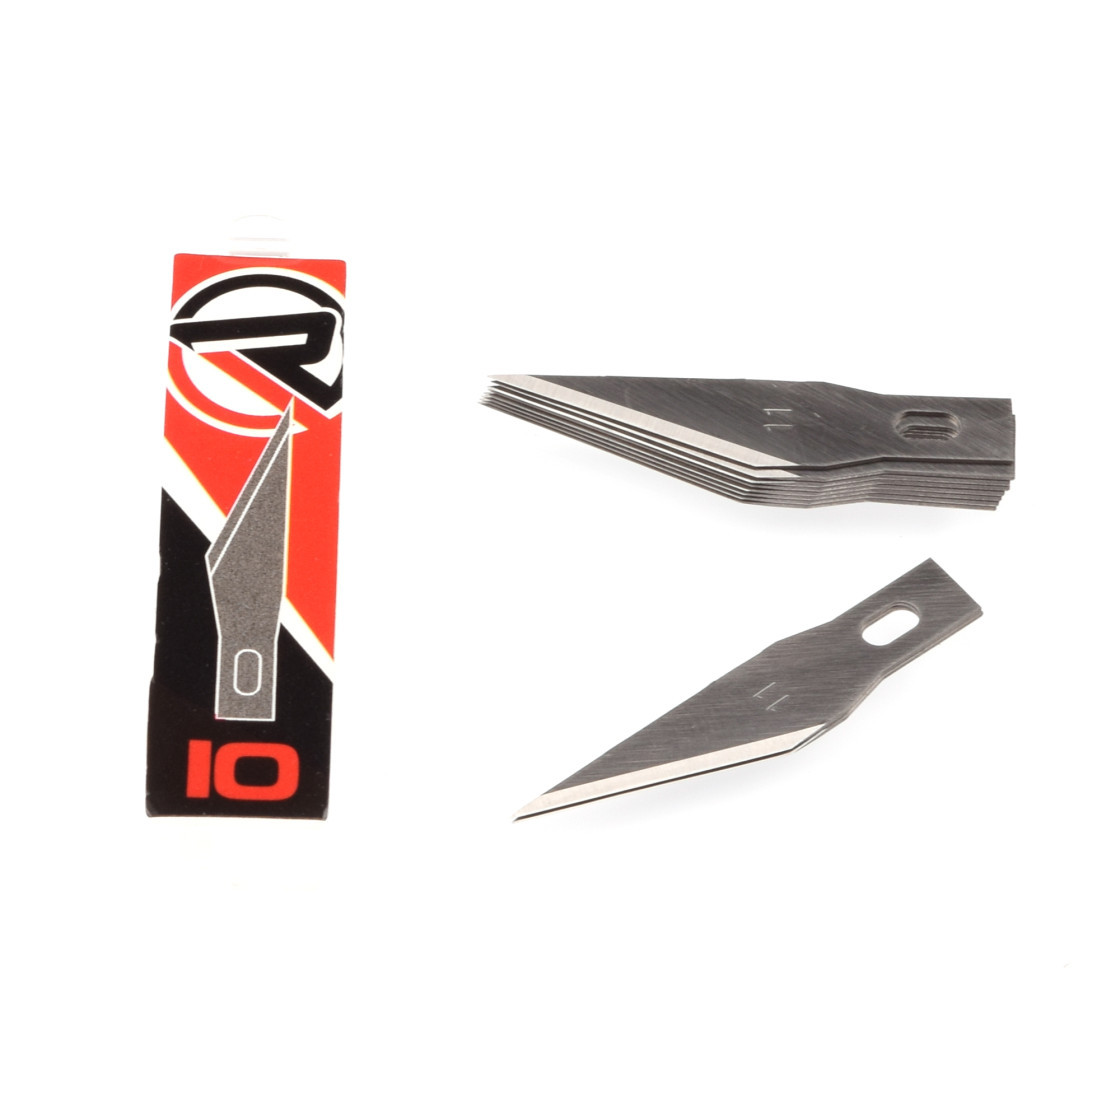 RUDDOG Hobby Knife Blades (10pcs